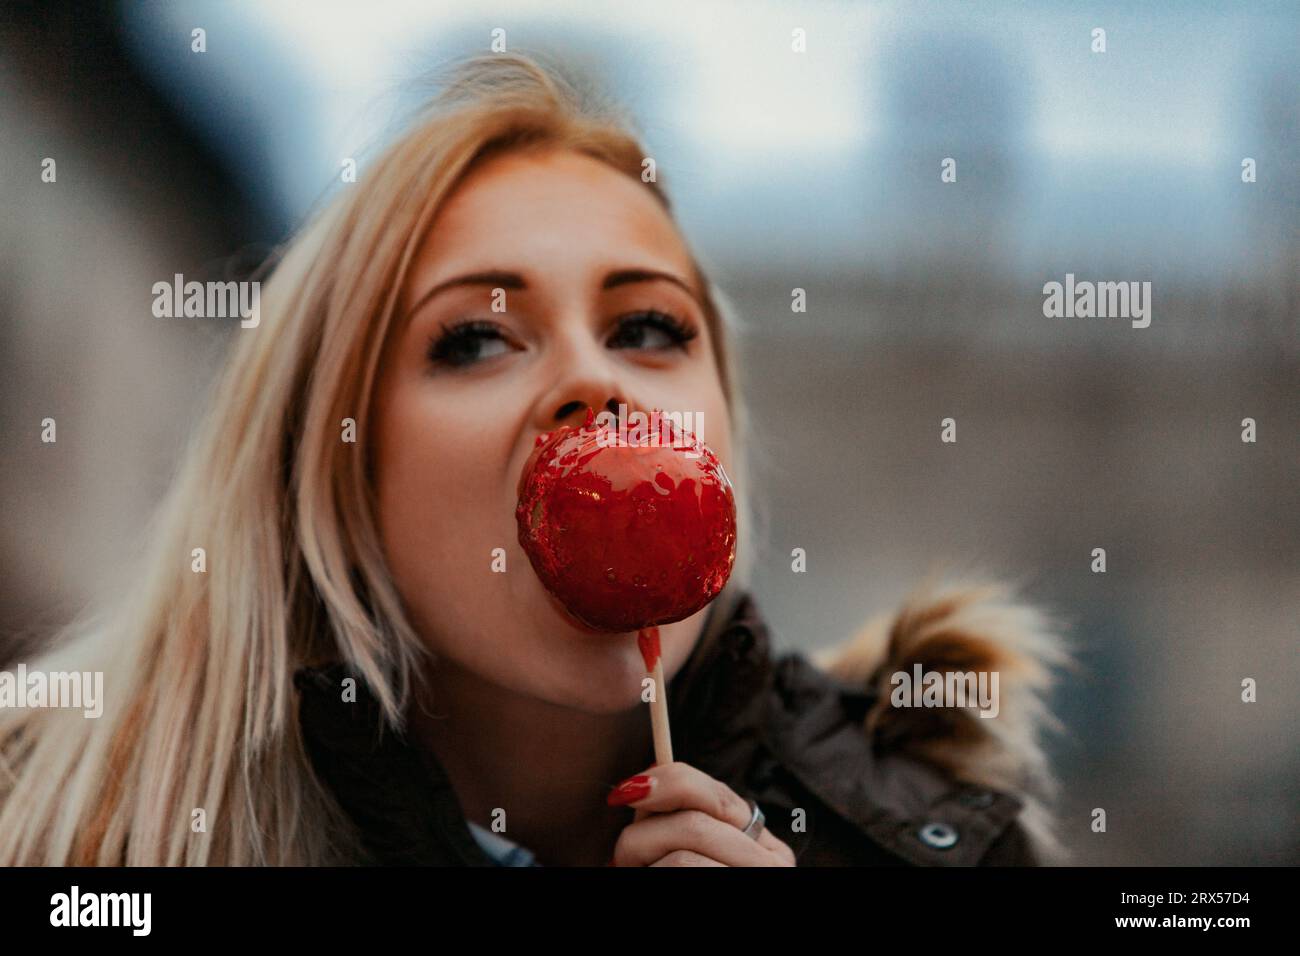 Una mujer rubia muerde una manzana de caramelo, cautivada por los monumentos artísticos y arquitectónicos que personifican el corazón de la civilización occidental. Súplica Foto de stock